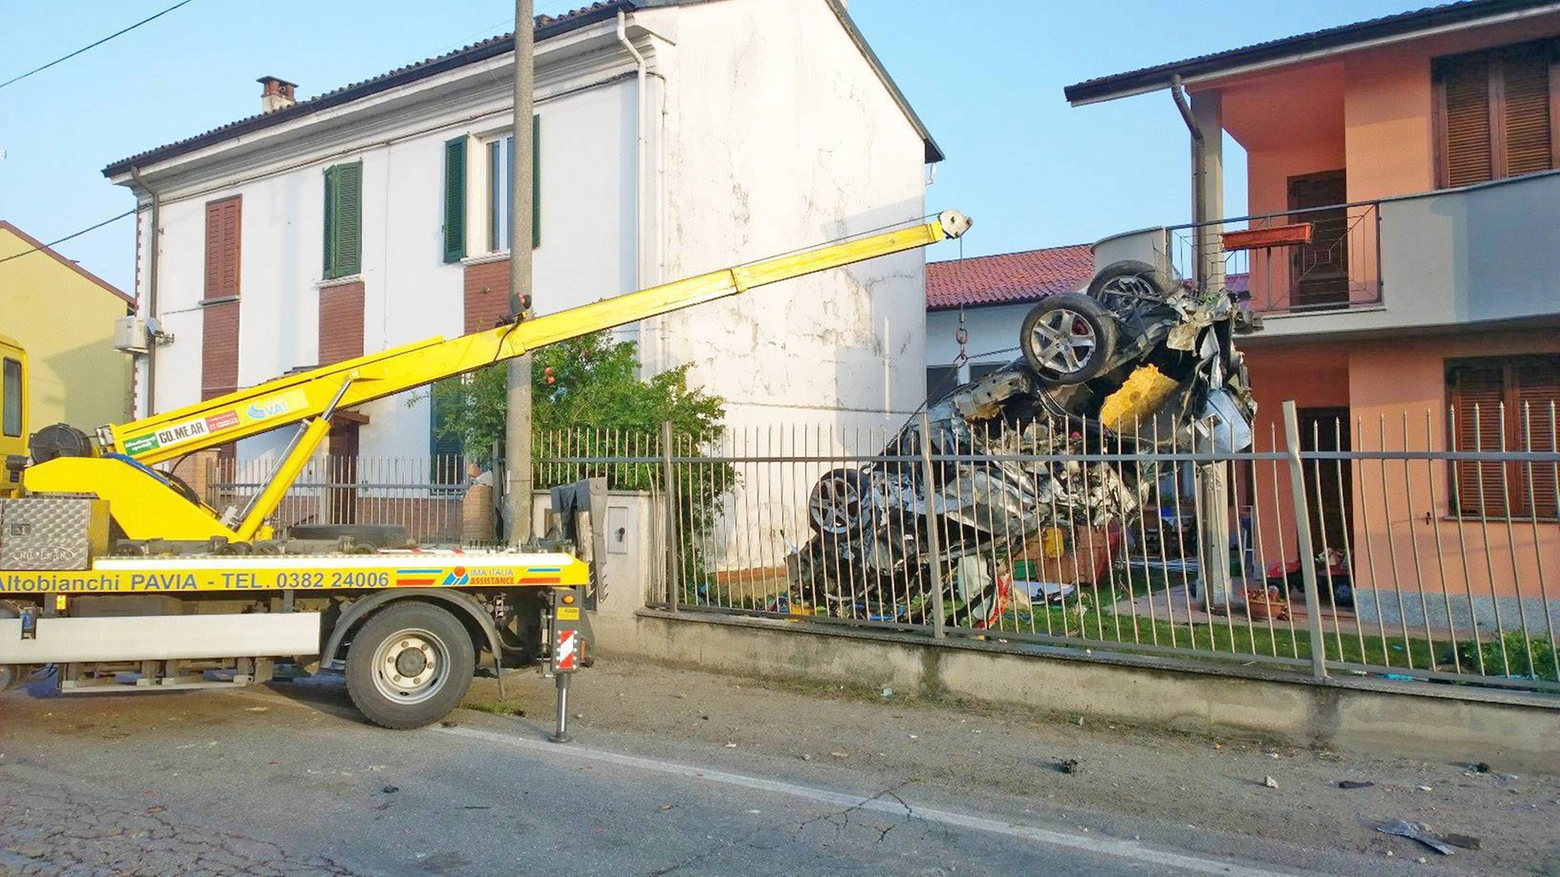 Incidente a Pavia, il recupero dell'auto coinvolta nello schianto mortale (Torres)